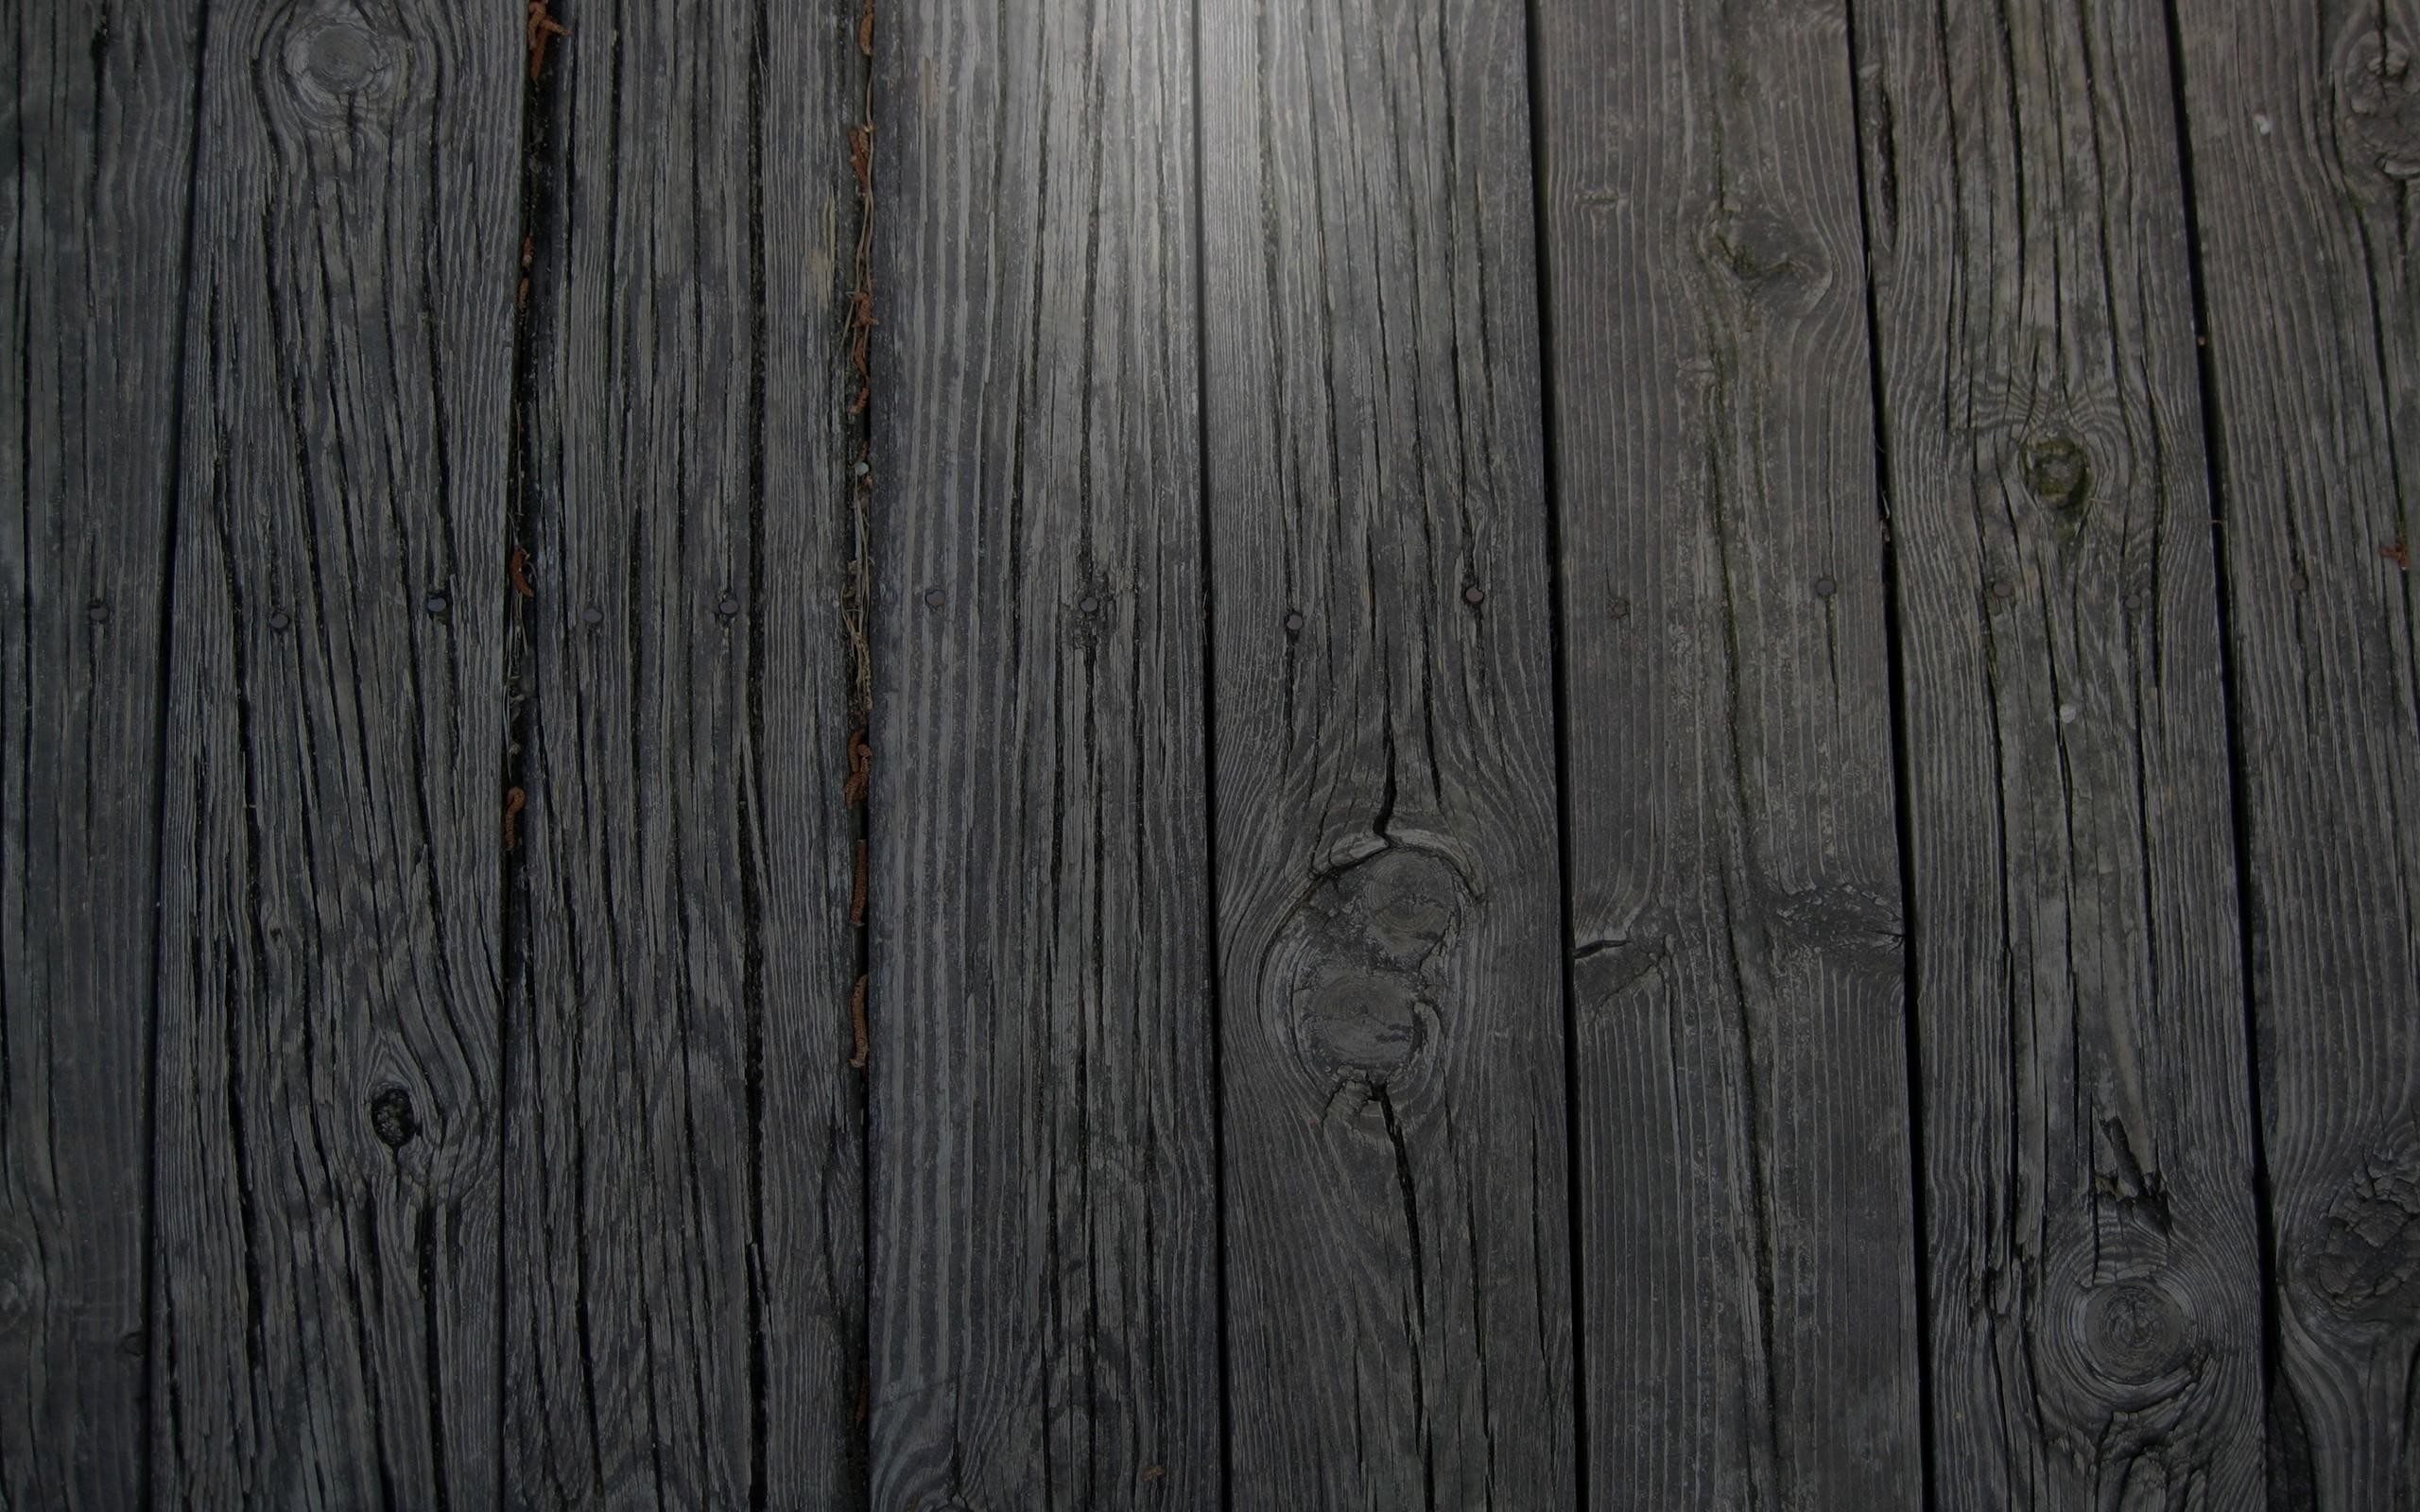 sfondo del desktop in legno,legna,pavimento in legno,legno duro,tavola,color legno